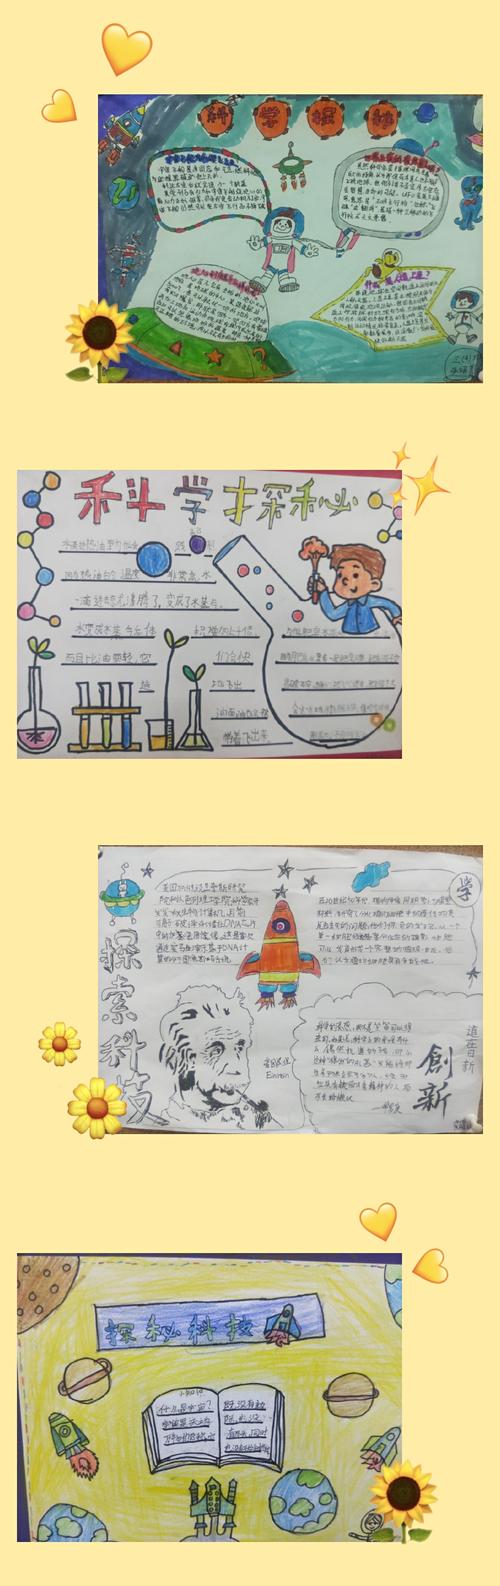 活动 写美篇      一张小小的手抄报展现出了孩子们向科学致敬的积极